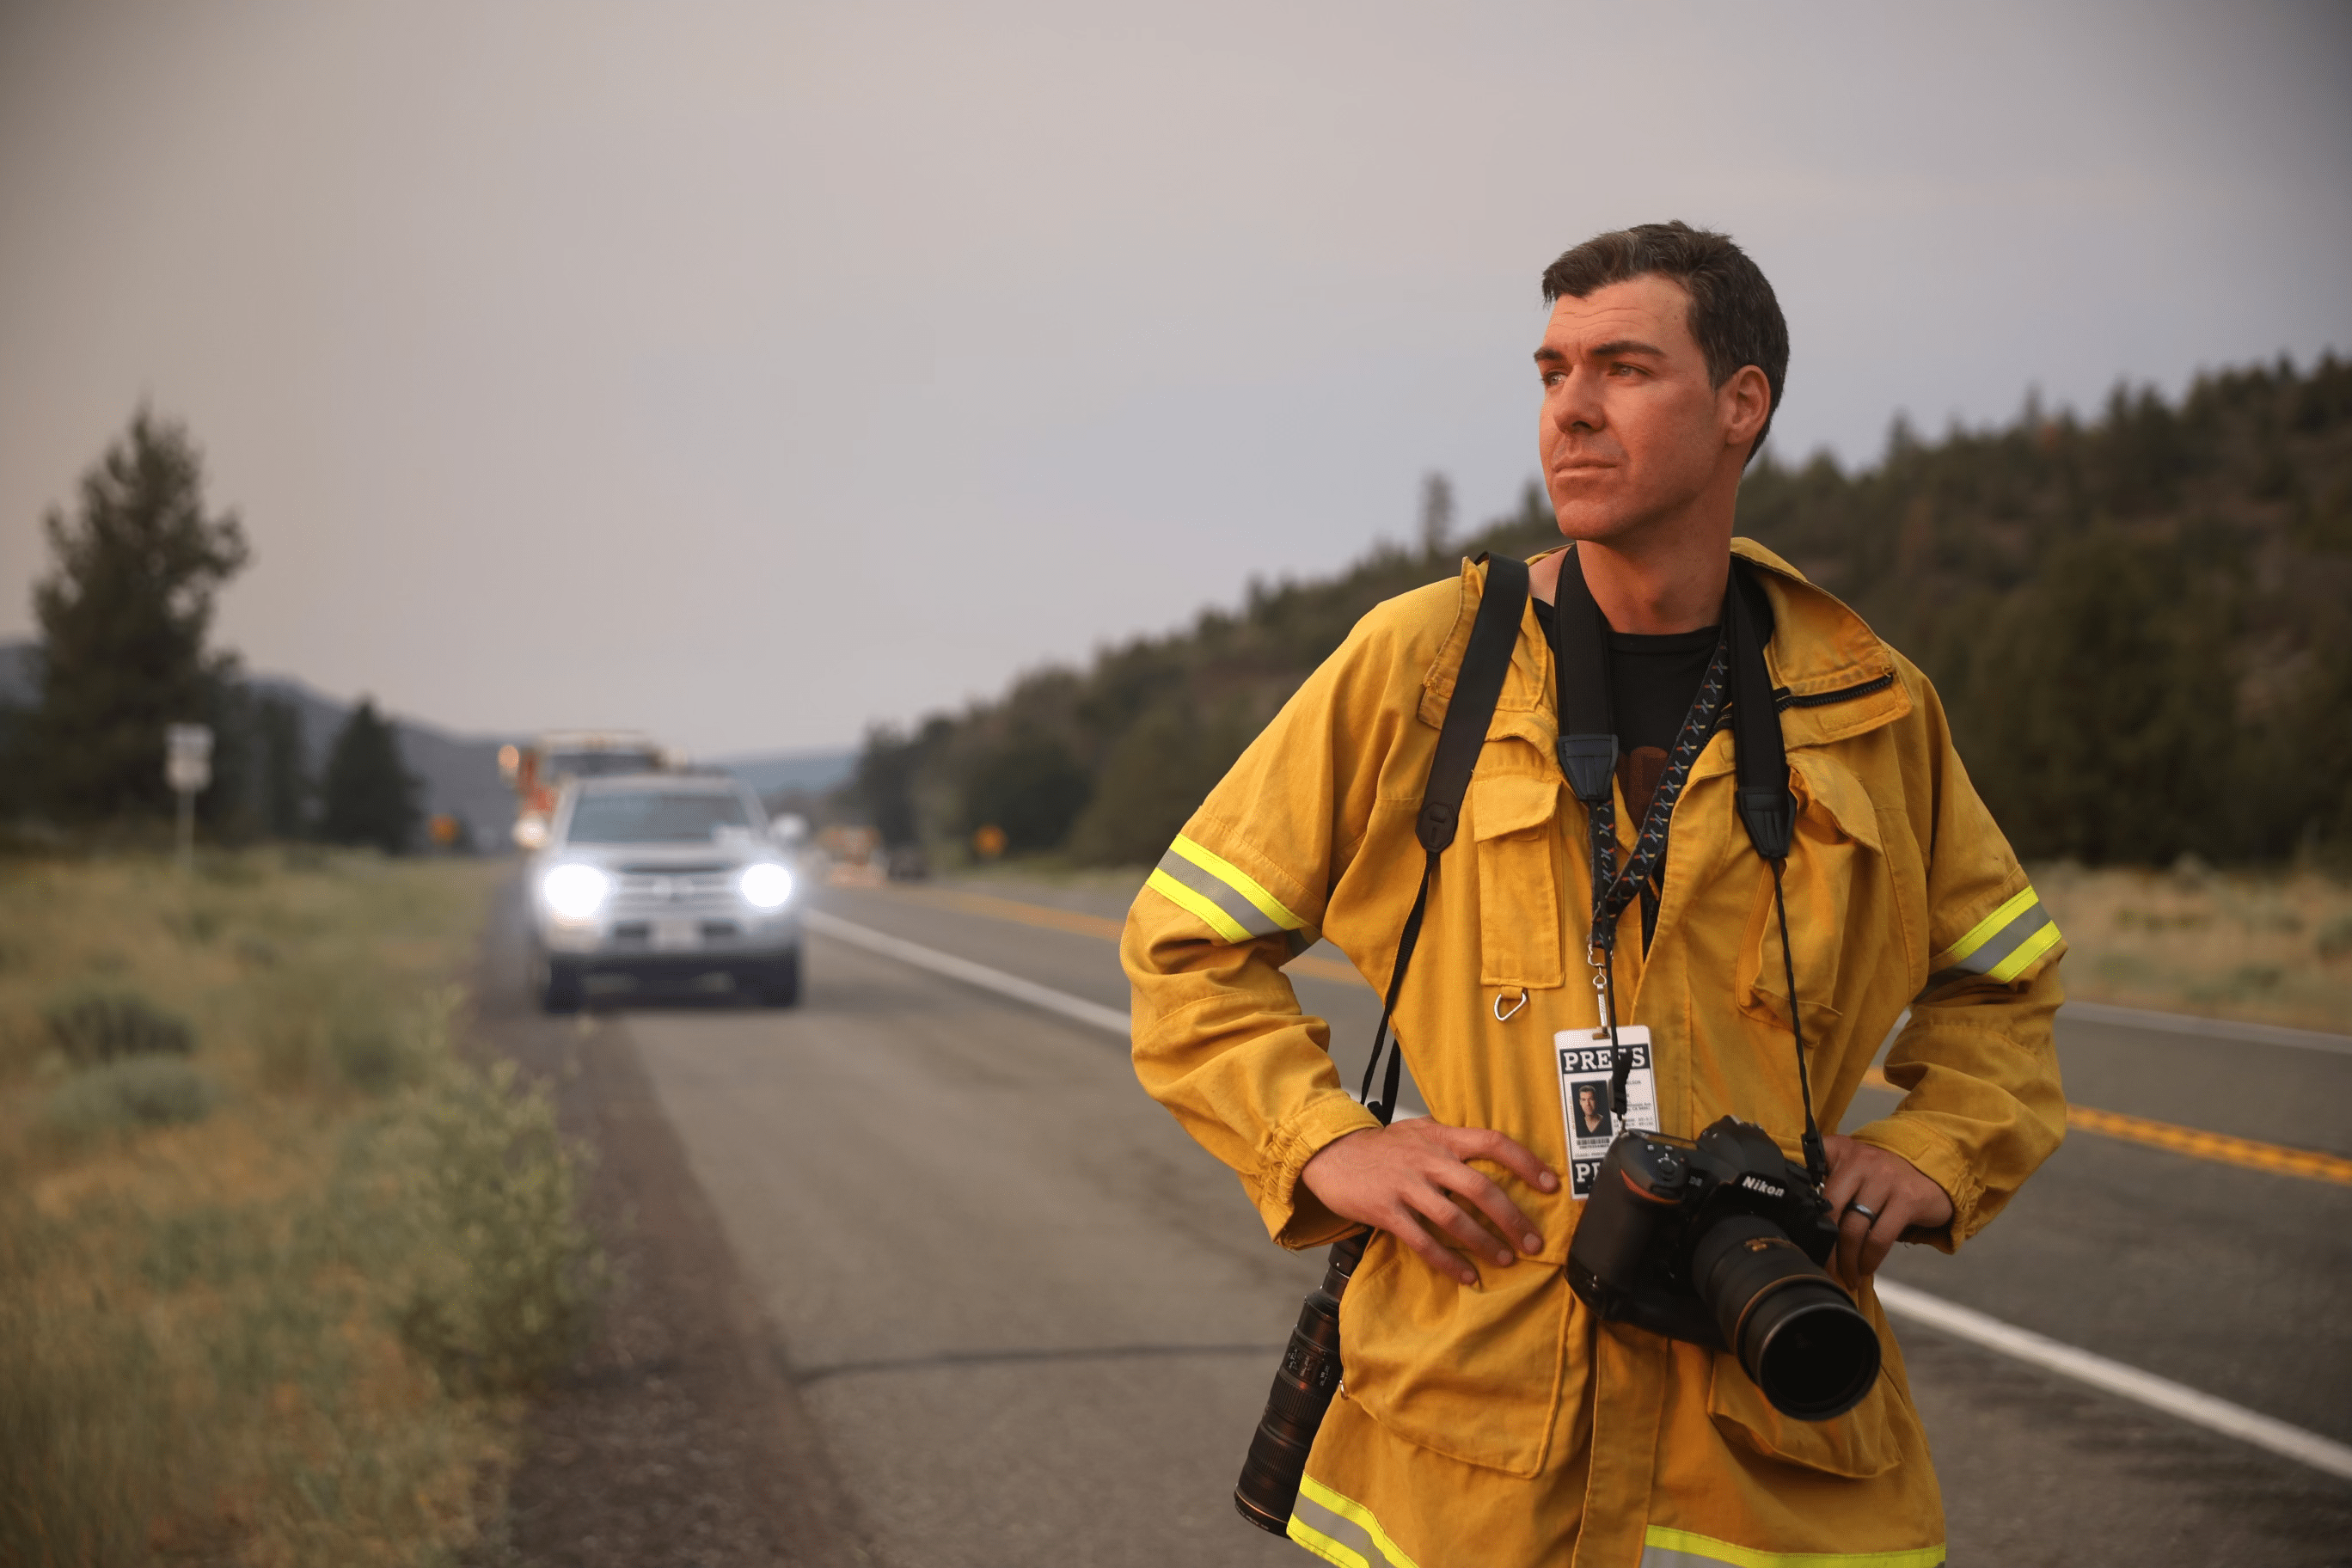 Photographer Josh Edelson mengamati lanskap sambil berdiri di jalan dengan kamera dan emblem pers di lehernya.